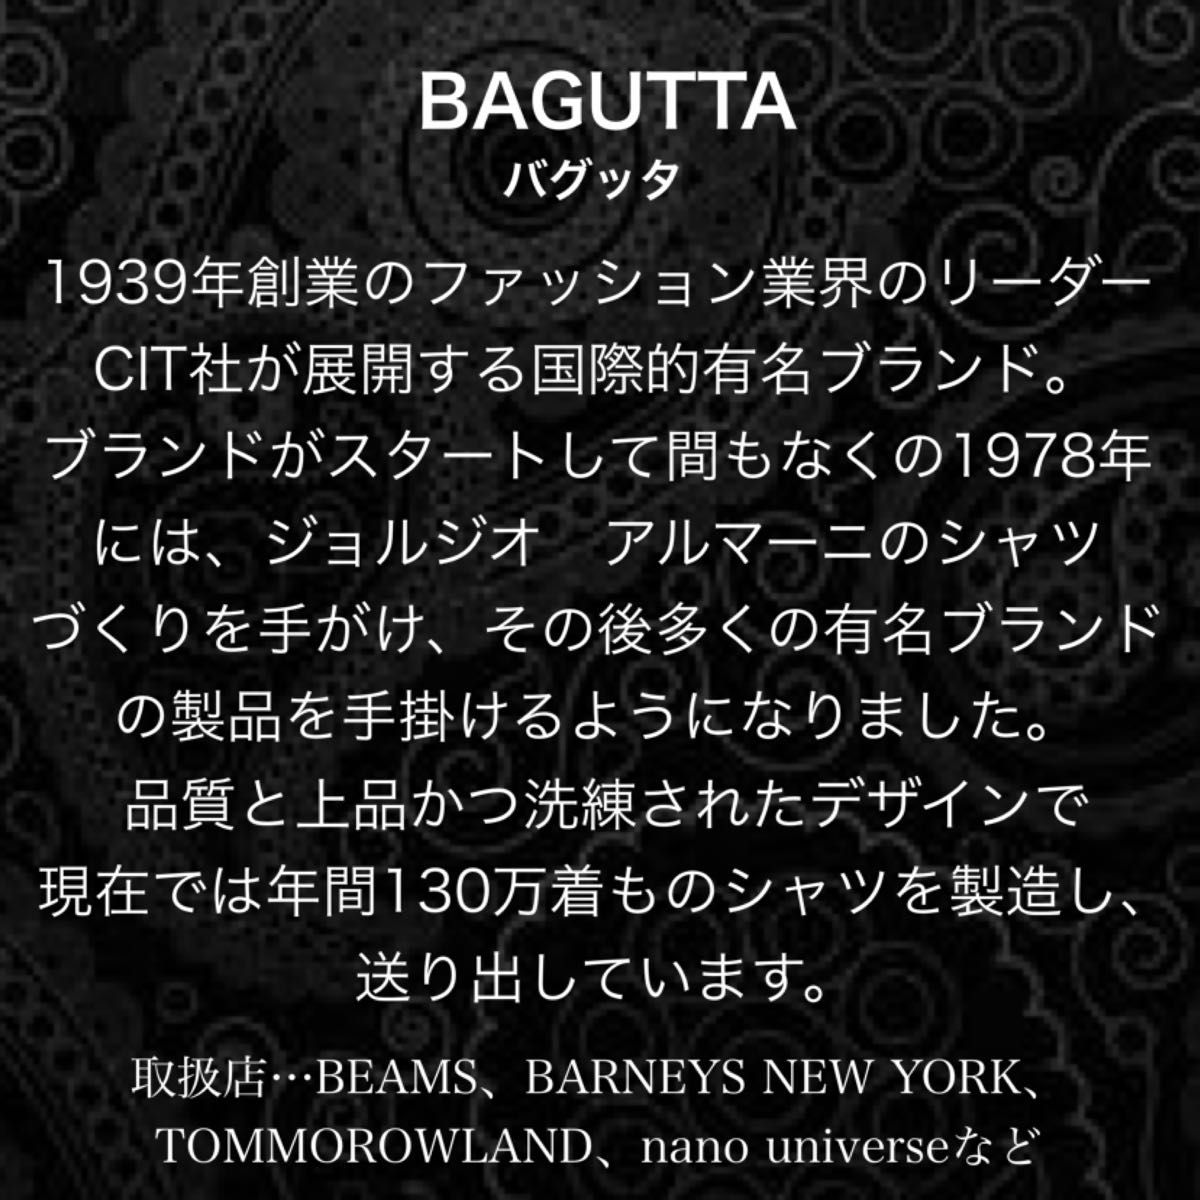 【新品タグ付】最高峰シャツブランド BAGUTTA シャツ コットン ボタンダウン ストライプ柄 ピンク Mサイズ 39